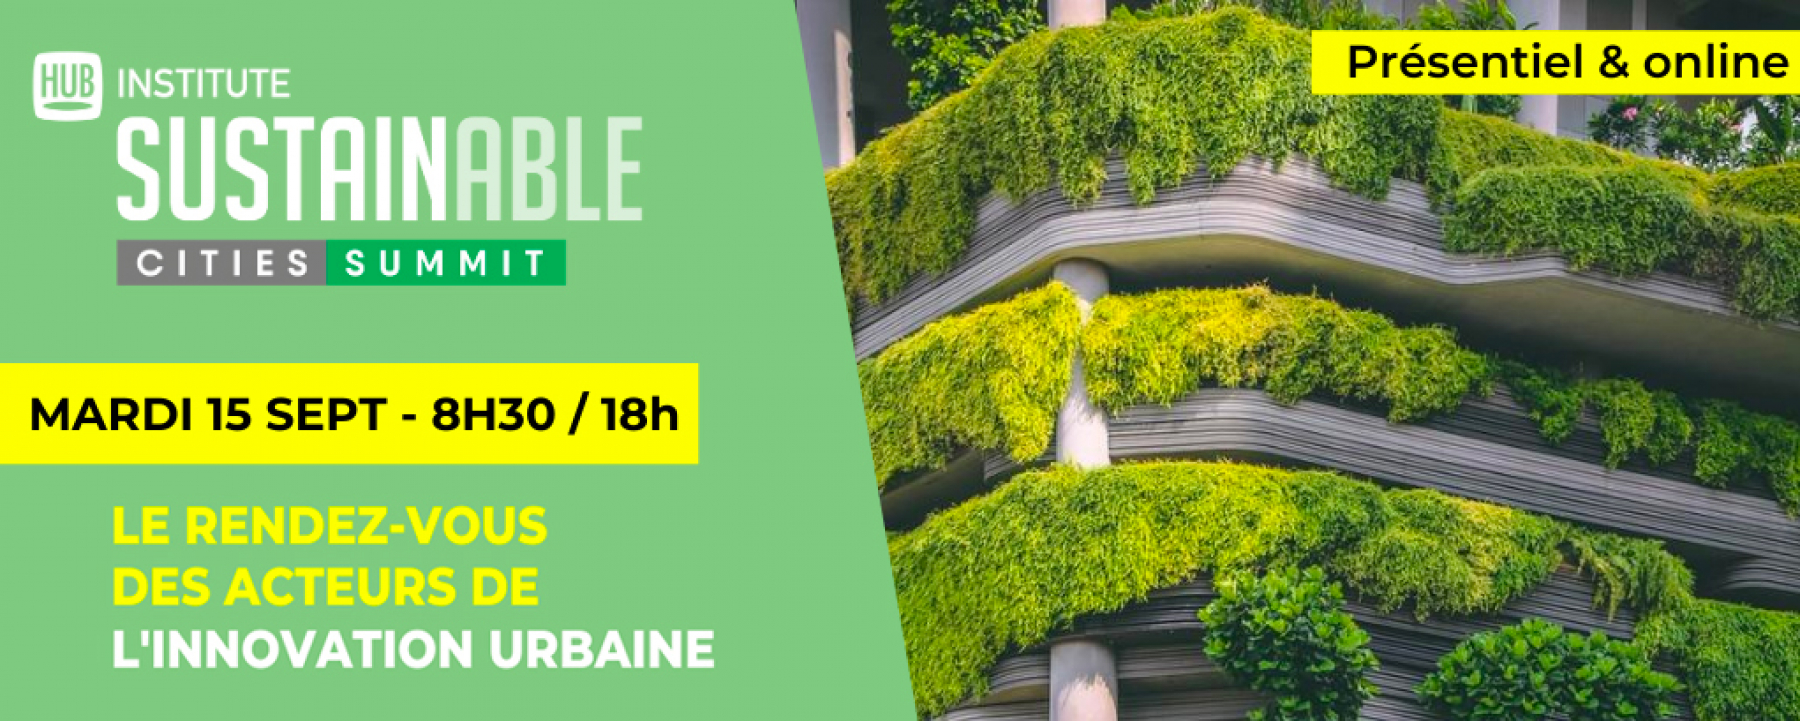 Sustainable Cities Summit, event organisé par Hub Institute le 15 septembre 2020 